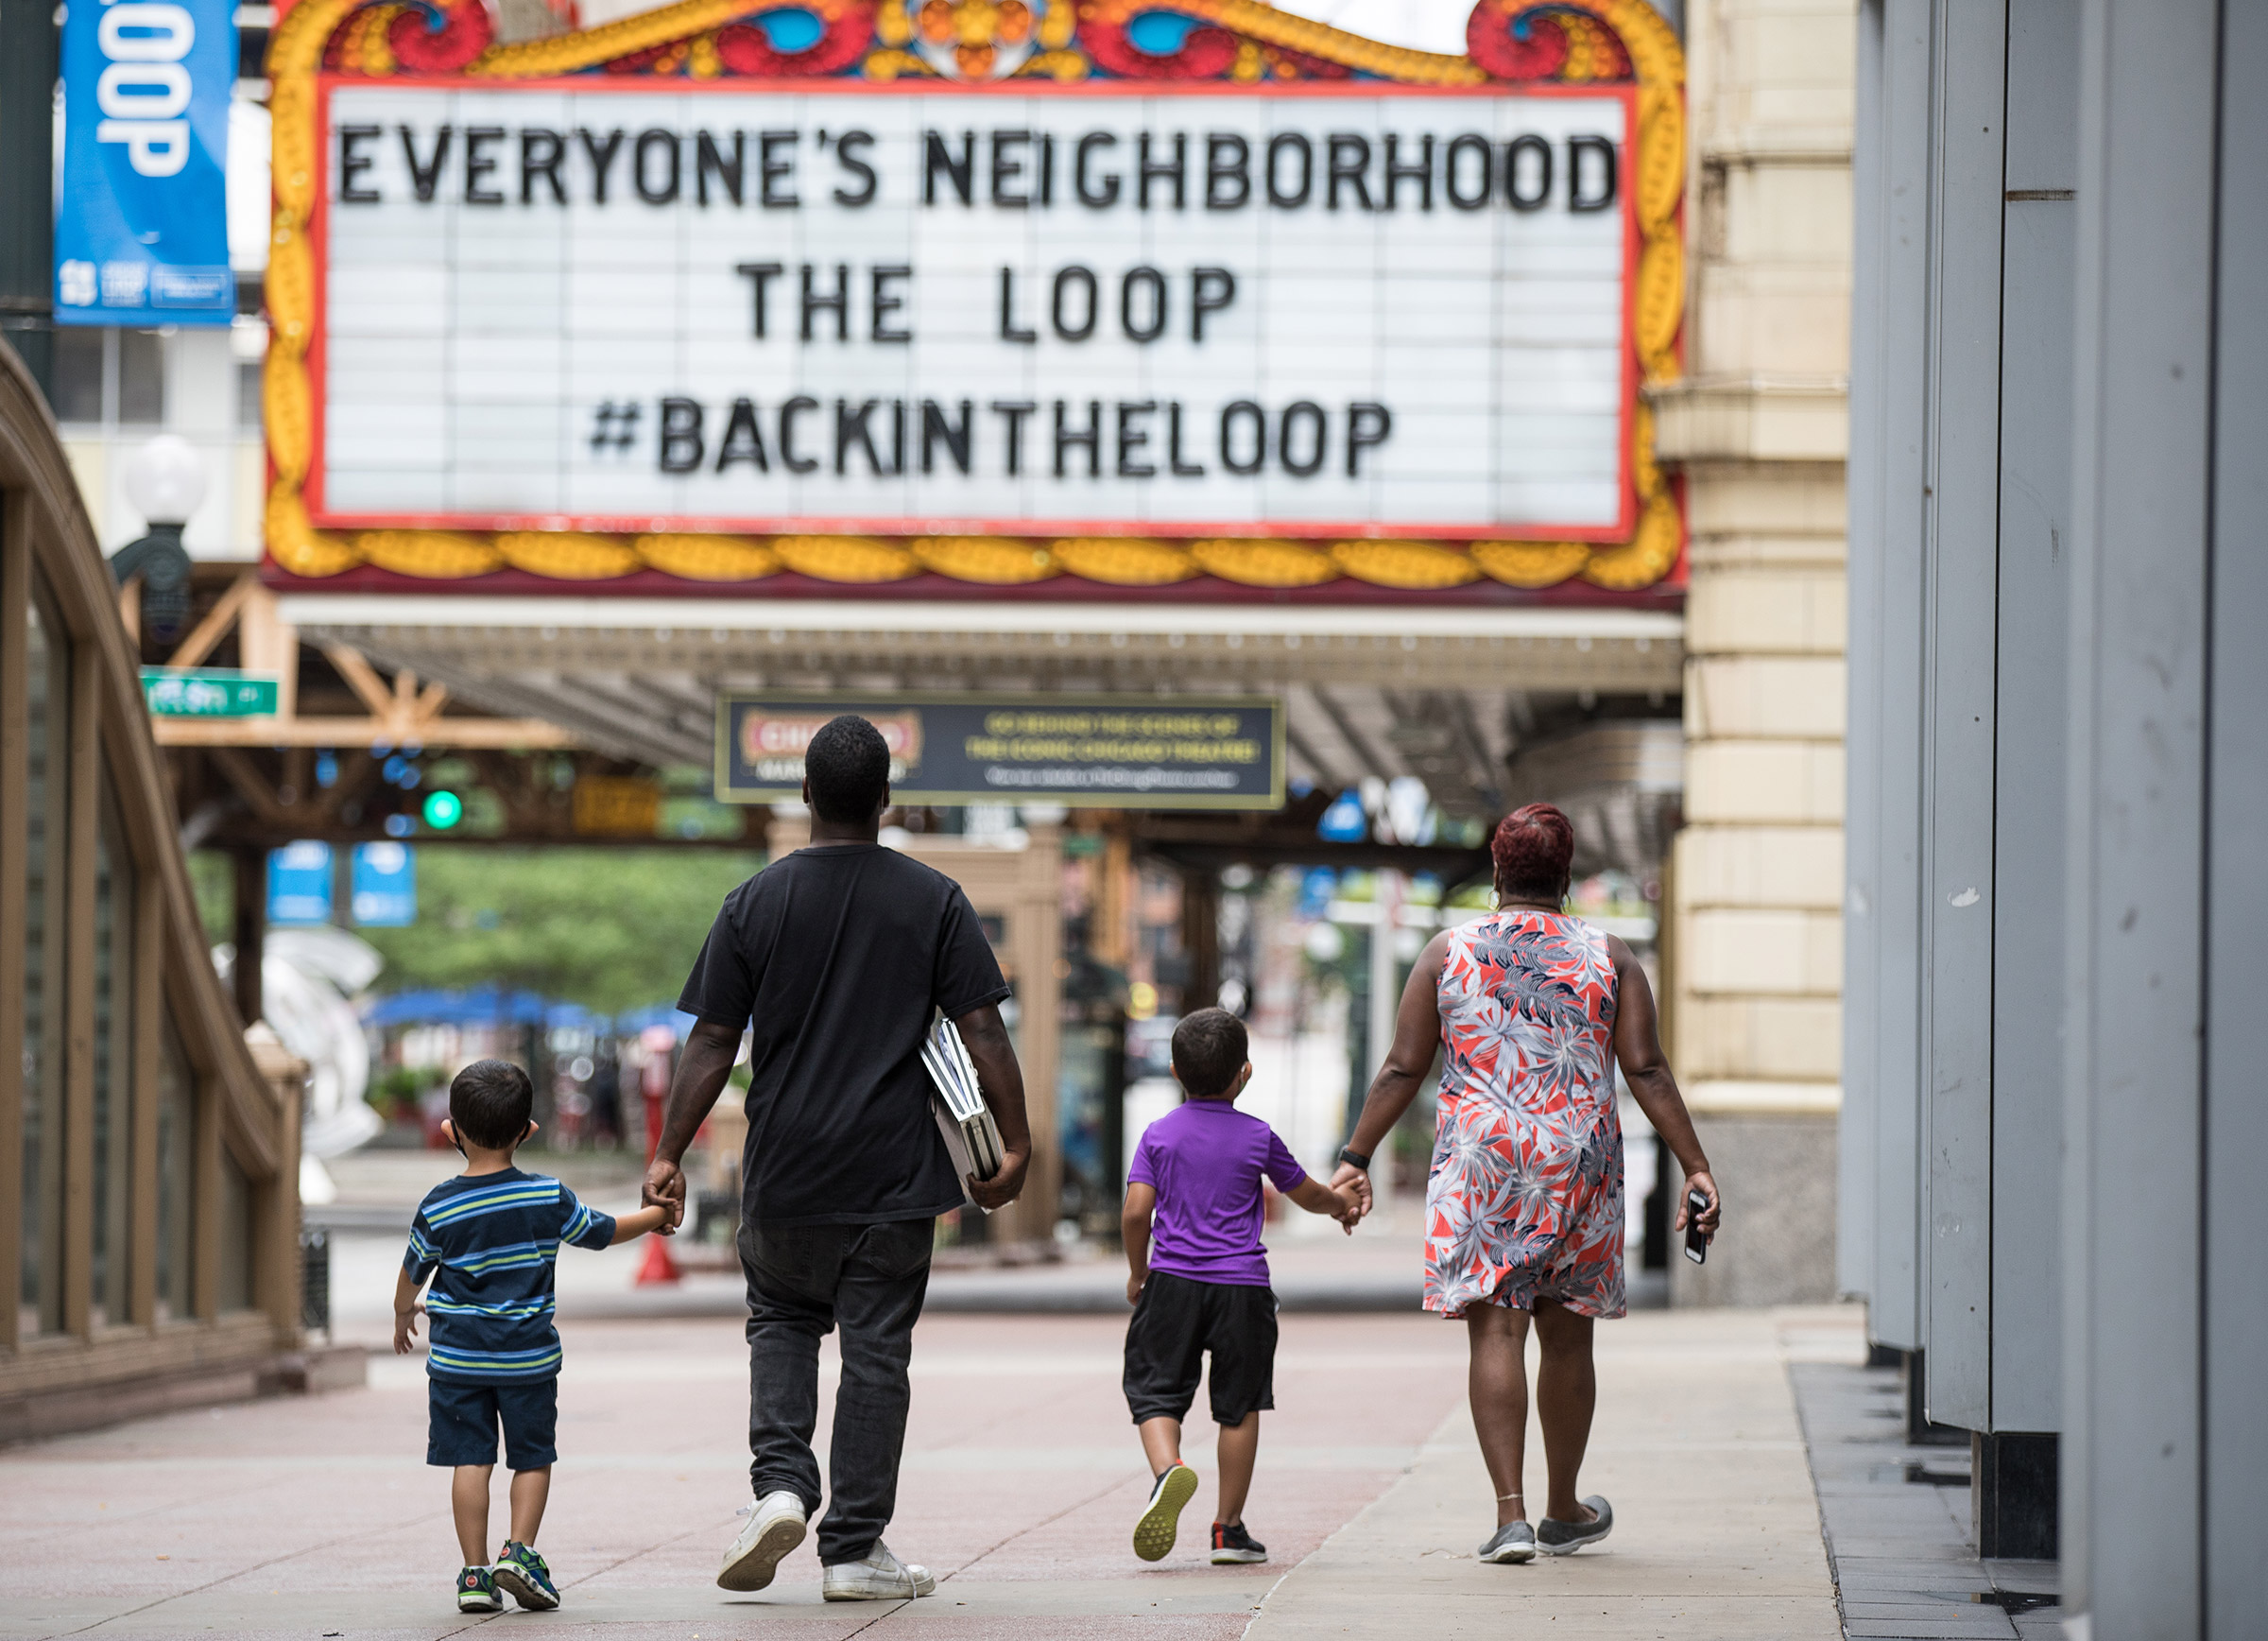 Everyone's Neighborhood #BackInTheLoop